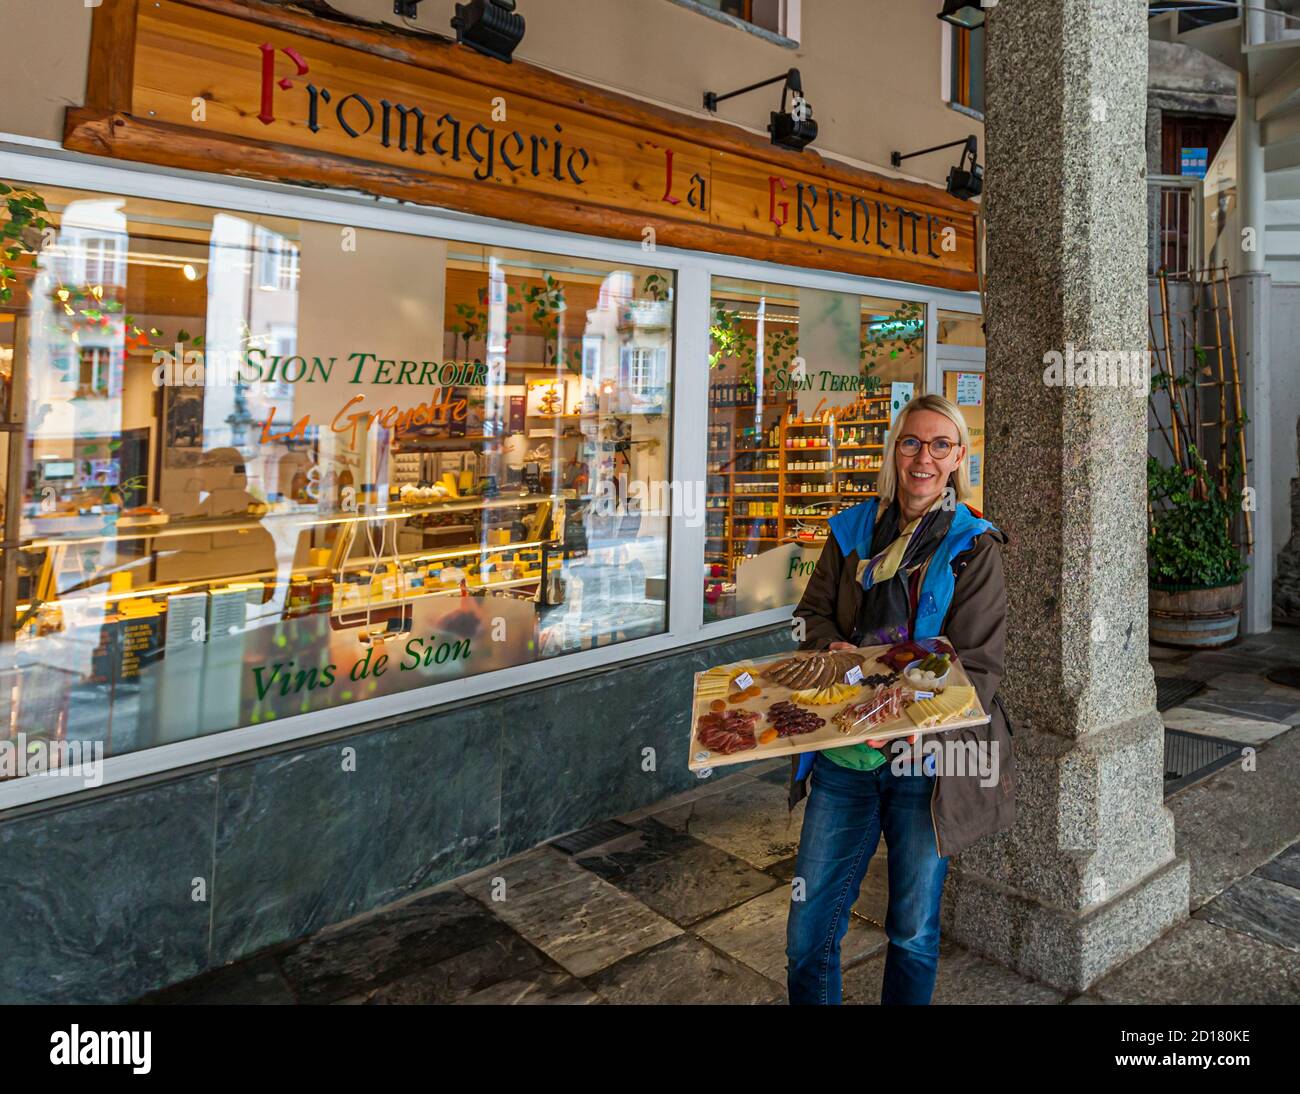 In einer Weinbar in der Altstadt von Sion, Schweiz, wird ein Teller mit Walliser Spezialitäten aus Käse und Schinken zusammen mit anderen Weinen verkostet Stockfoto